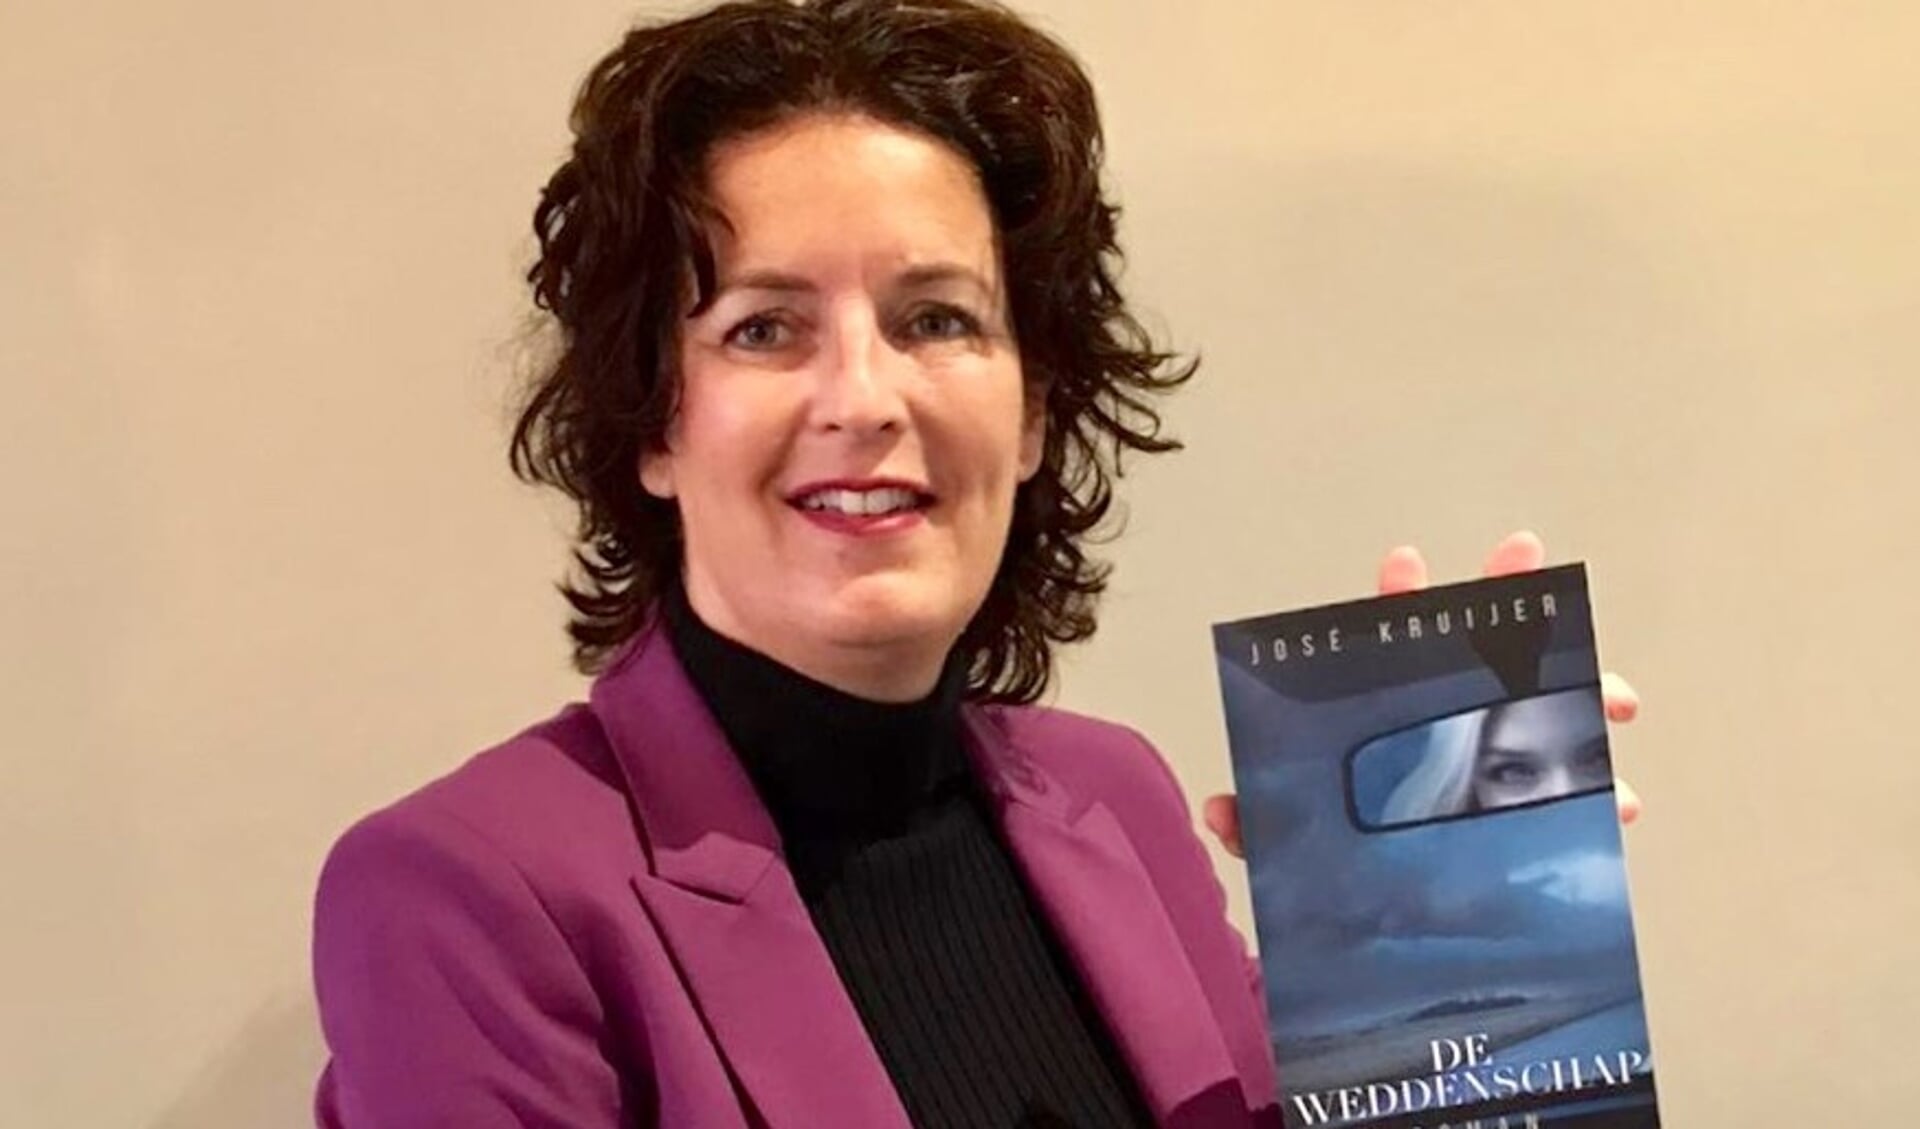 José Kruijer won met haar debuut Verzwegen de 2e prijs bij de verkiezing van Vrouwenthrillers.nl voor de Beste Nederlandse Vrouwenthriller 2017. Voor haar tweede boek Manzanilla ontving ze ook lovende recensies.